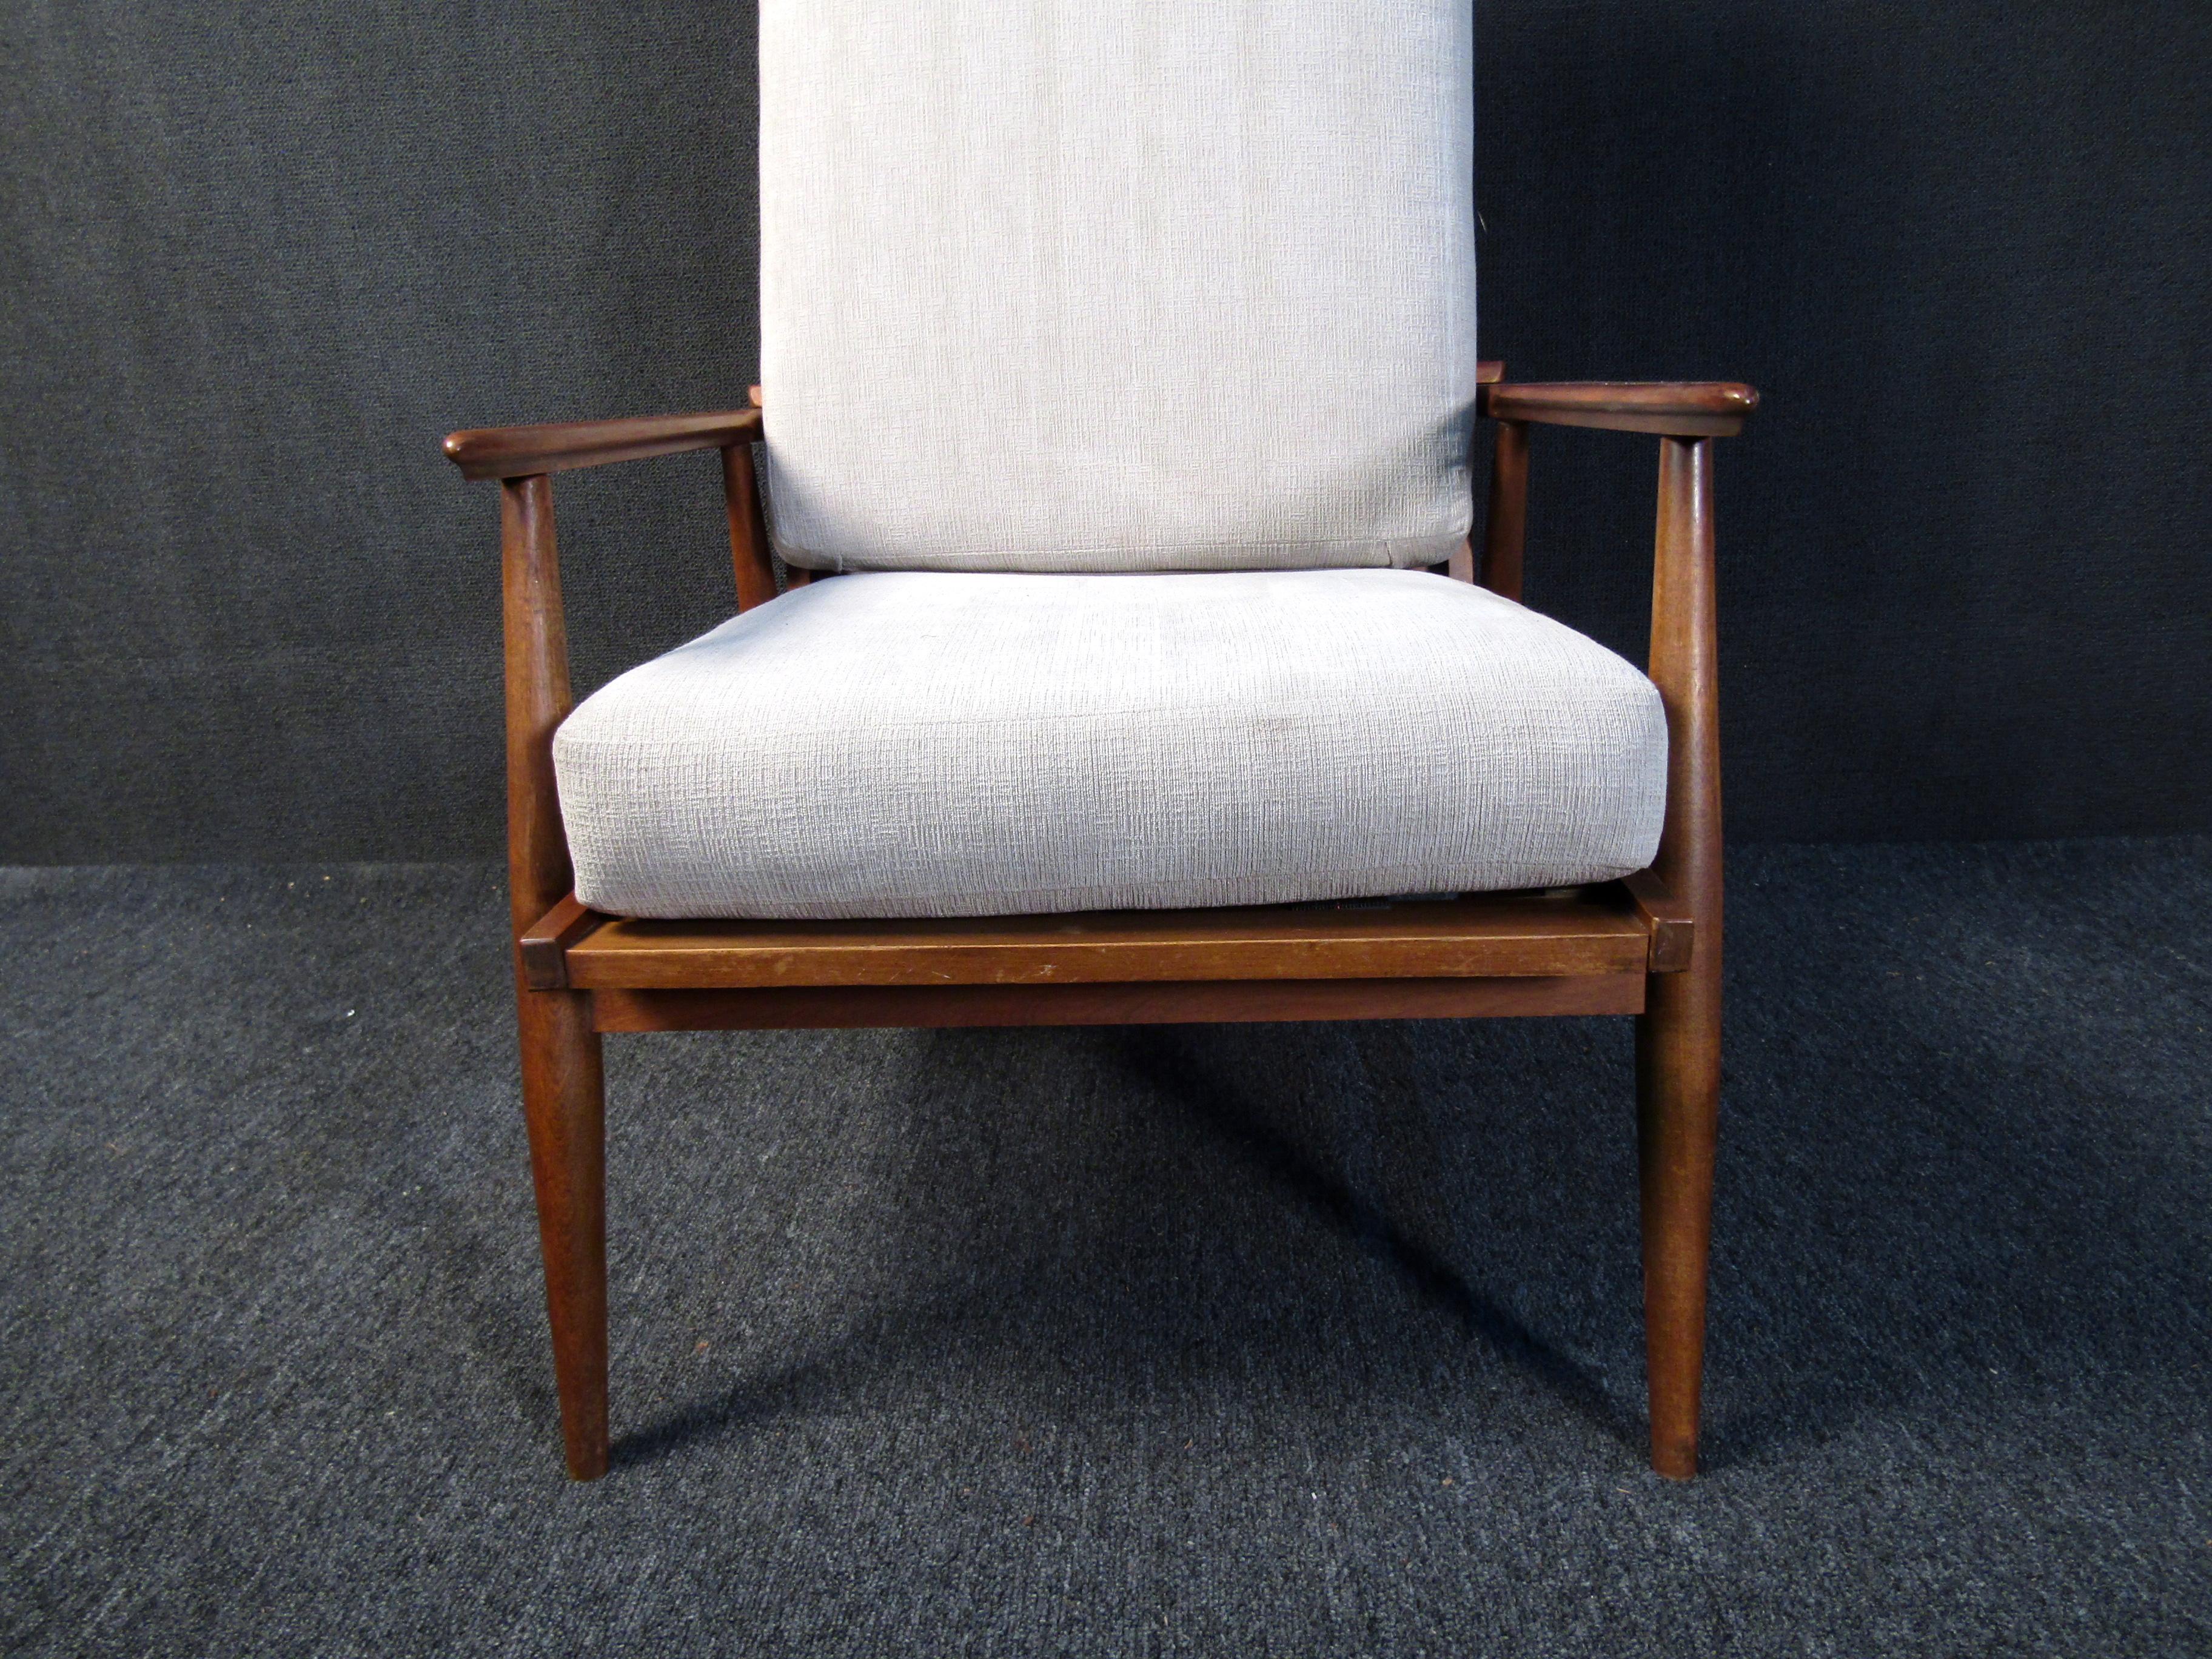 Ce fauteuil vintage combine le style Mid-Century Modern avec des matériaux de qualité et un design confortable. Des coussins rembourrés, un dossier inclinable et un cadre élégant en noyer font de cette chaise un choix unique pour tout coin lecture